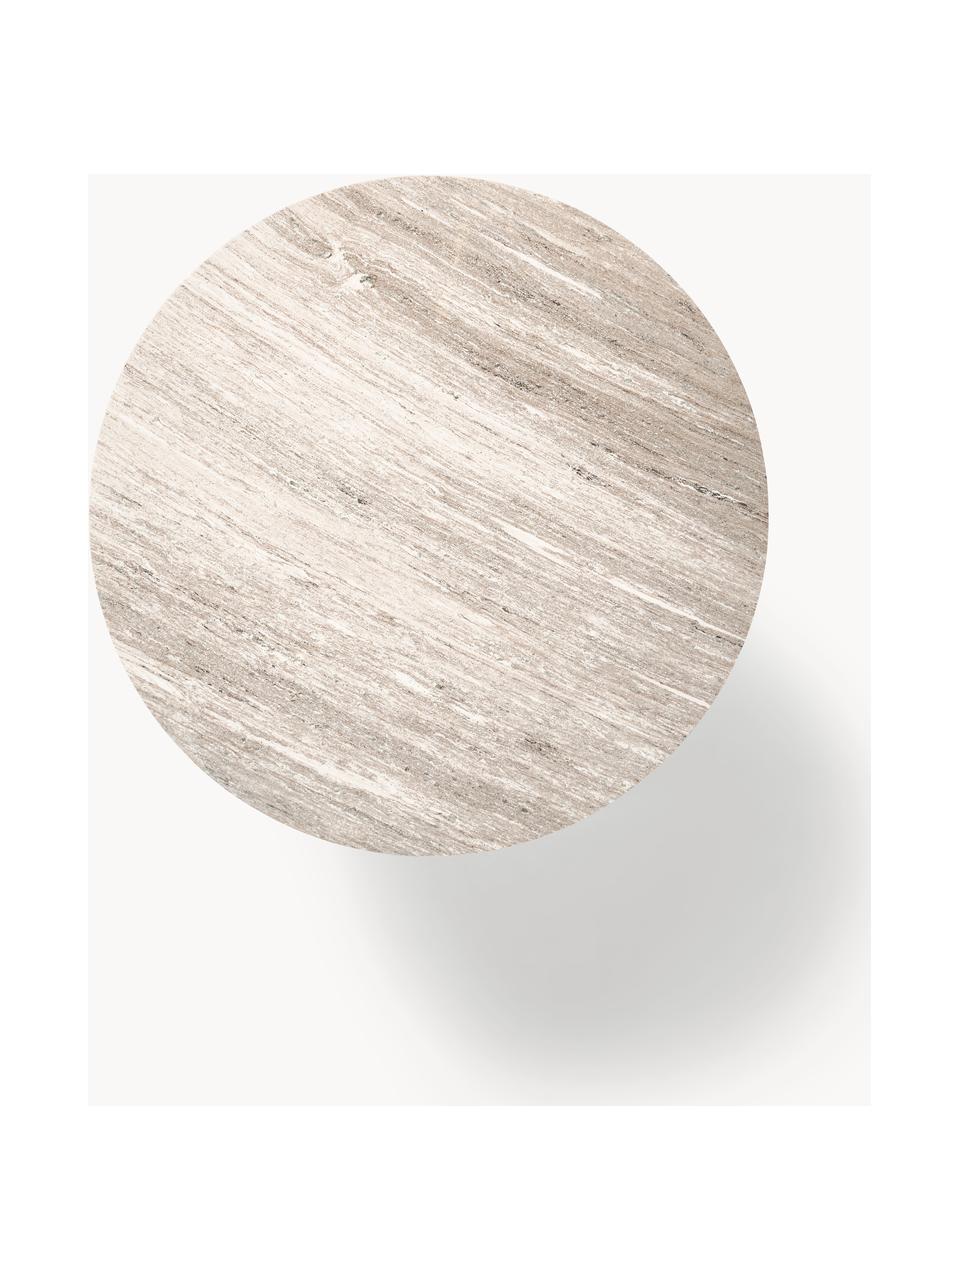 Runder Marmor-Esstisch Abby, Ø 120 cm, Tischplatte: Marmor, mitteldichte Holz, Hellbeige, marmoriert, Ø 120 cm